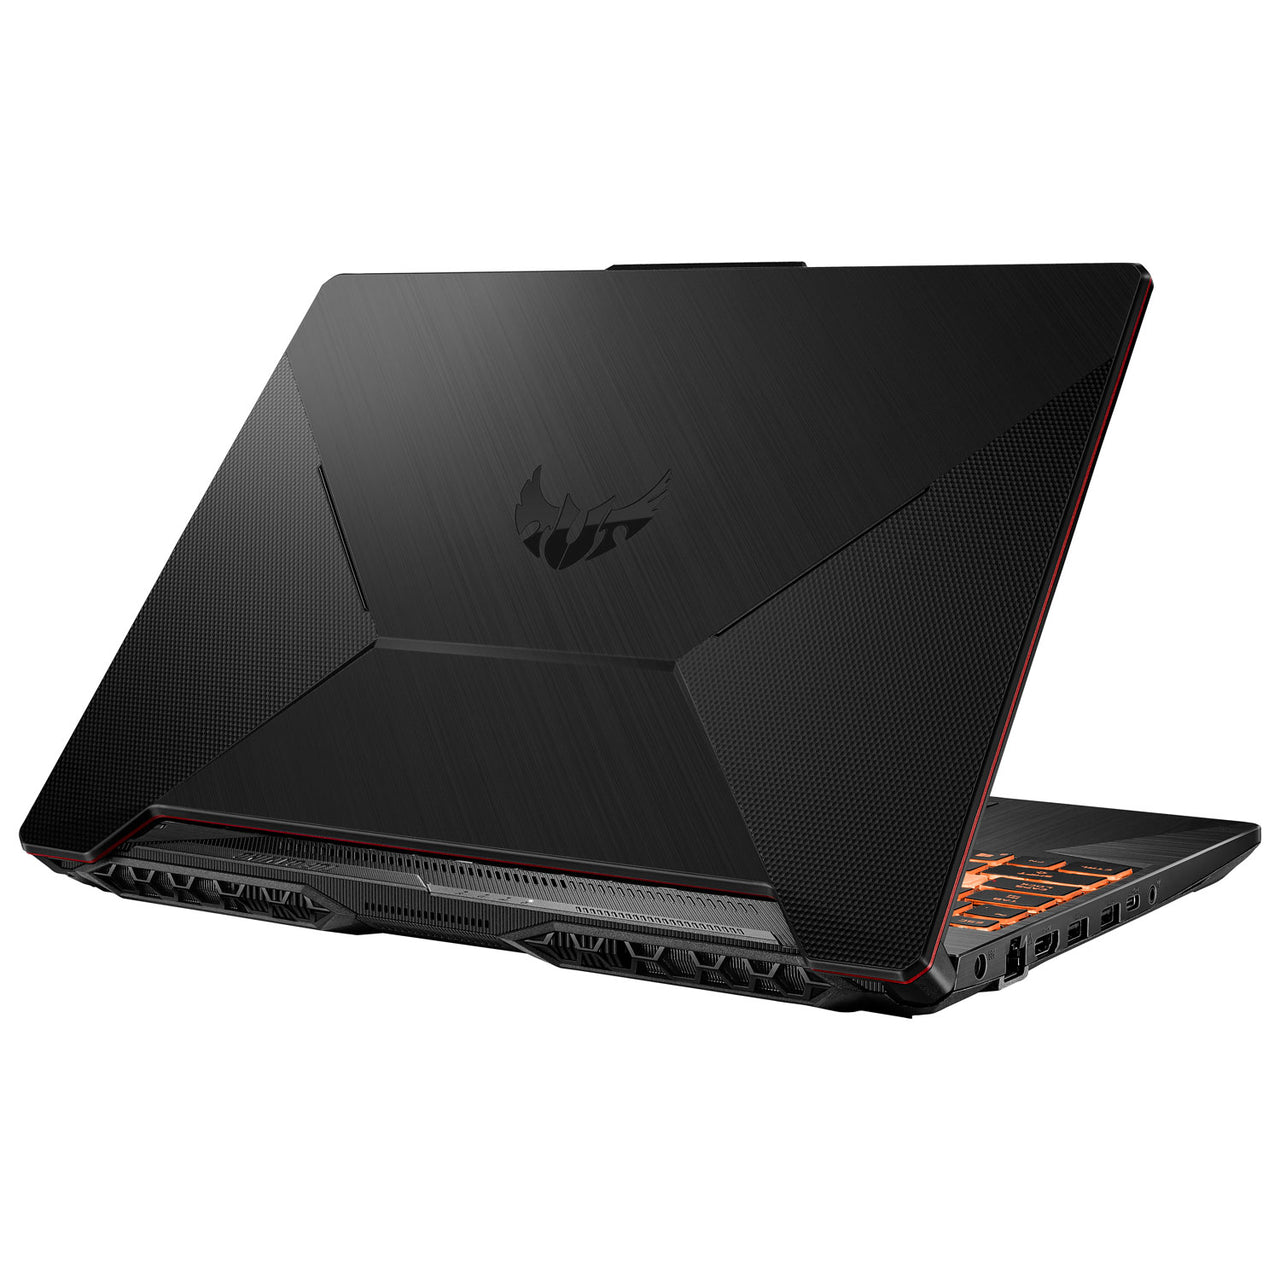 ASUS TUF Gaming F15 15.6" Gaming Laptop (Intel Core i5-10300H/512GB SSD/8GB RAM/GeForce GTX 1650)